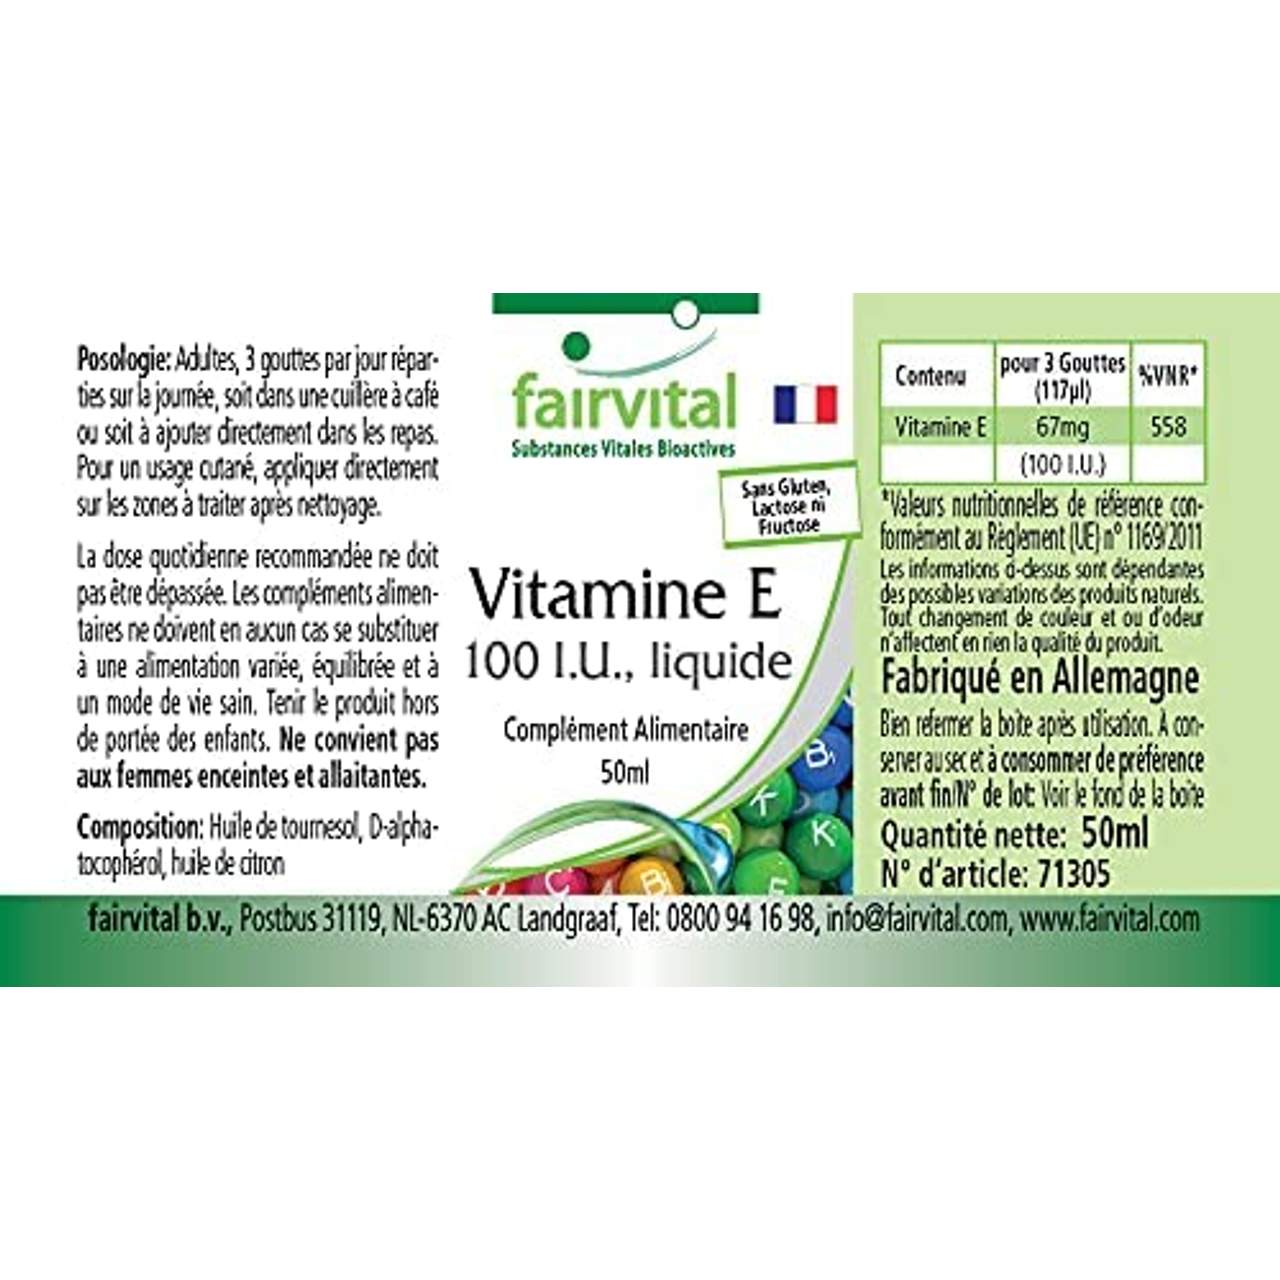 Vitamin E Öl 100 I.E